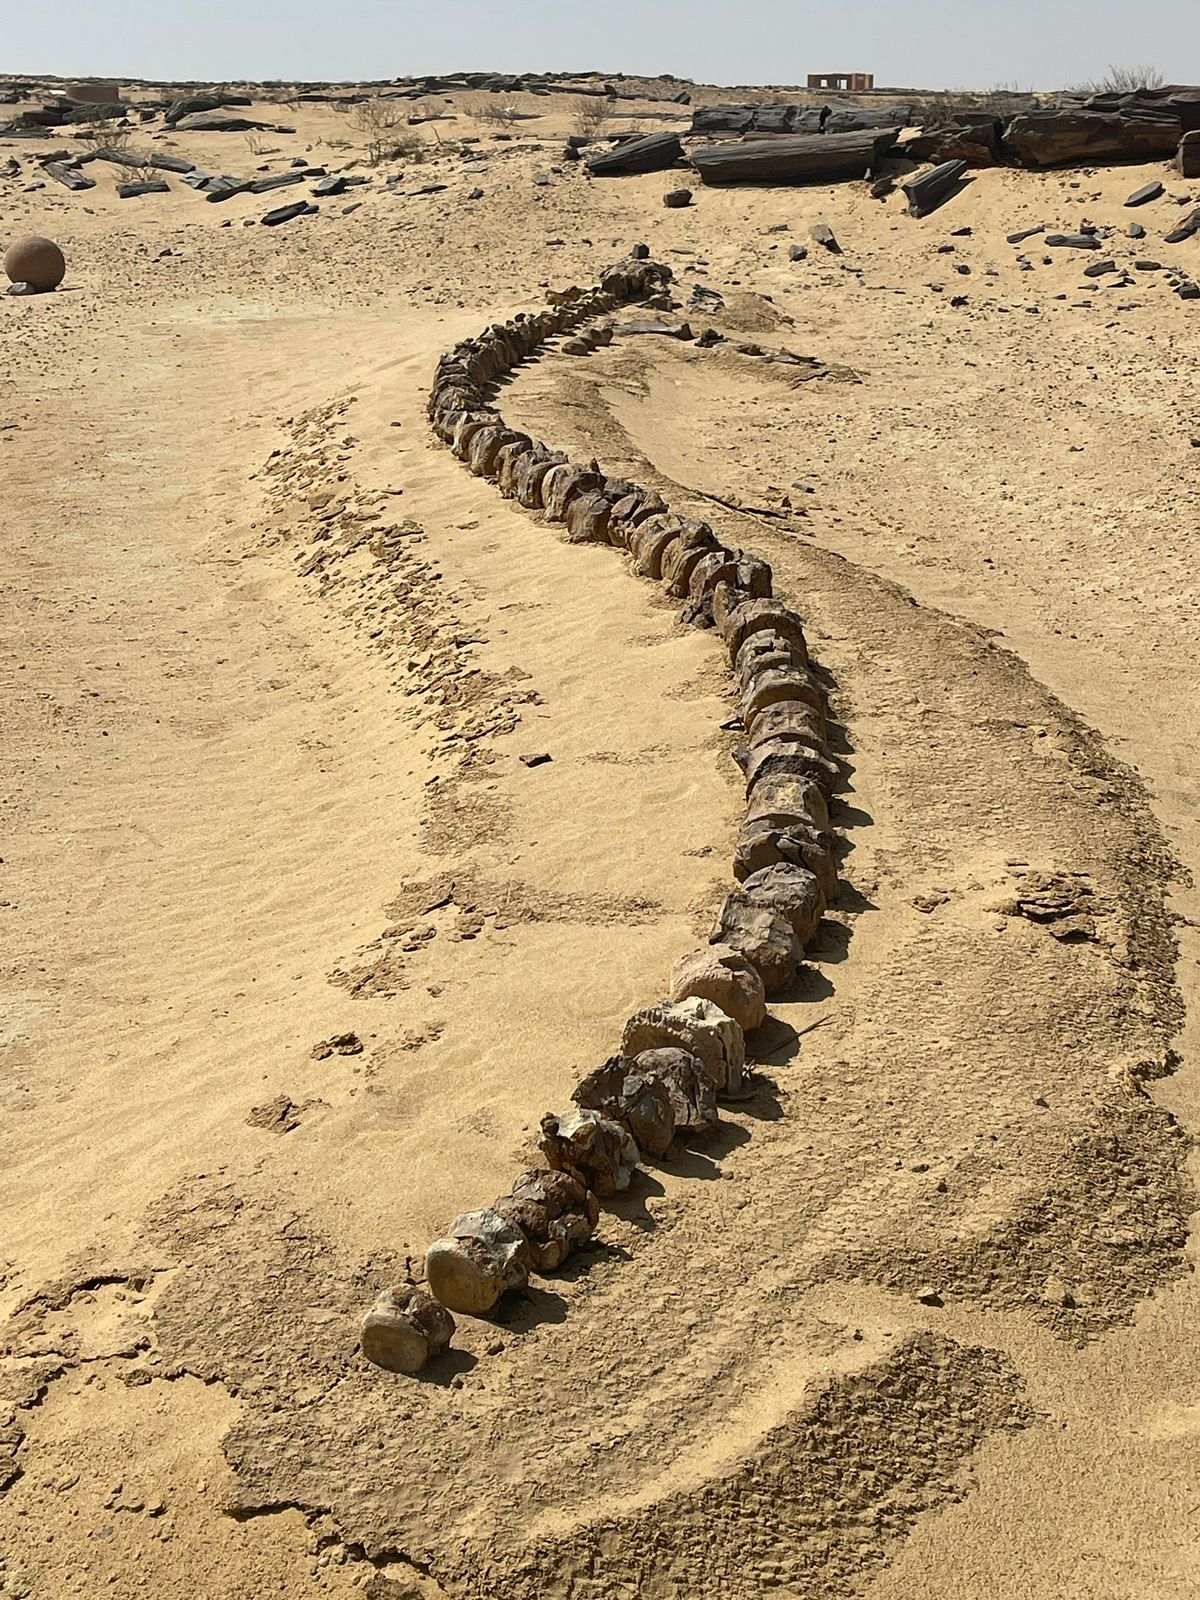 Whale remains, Wadi Hitan, Faiyum